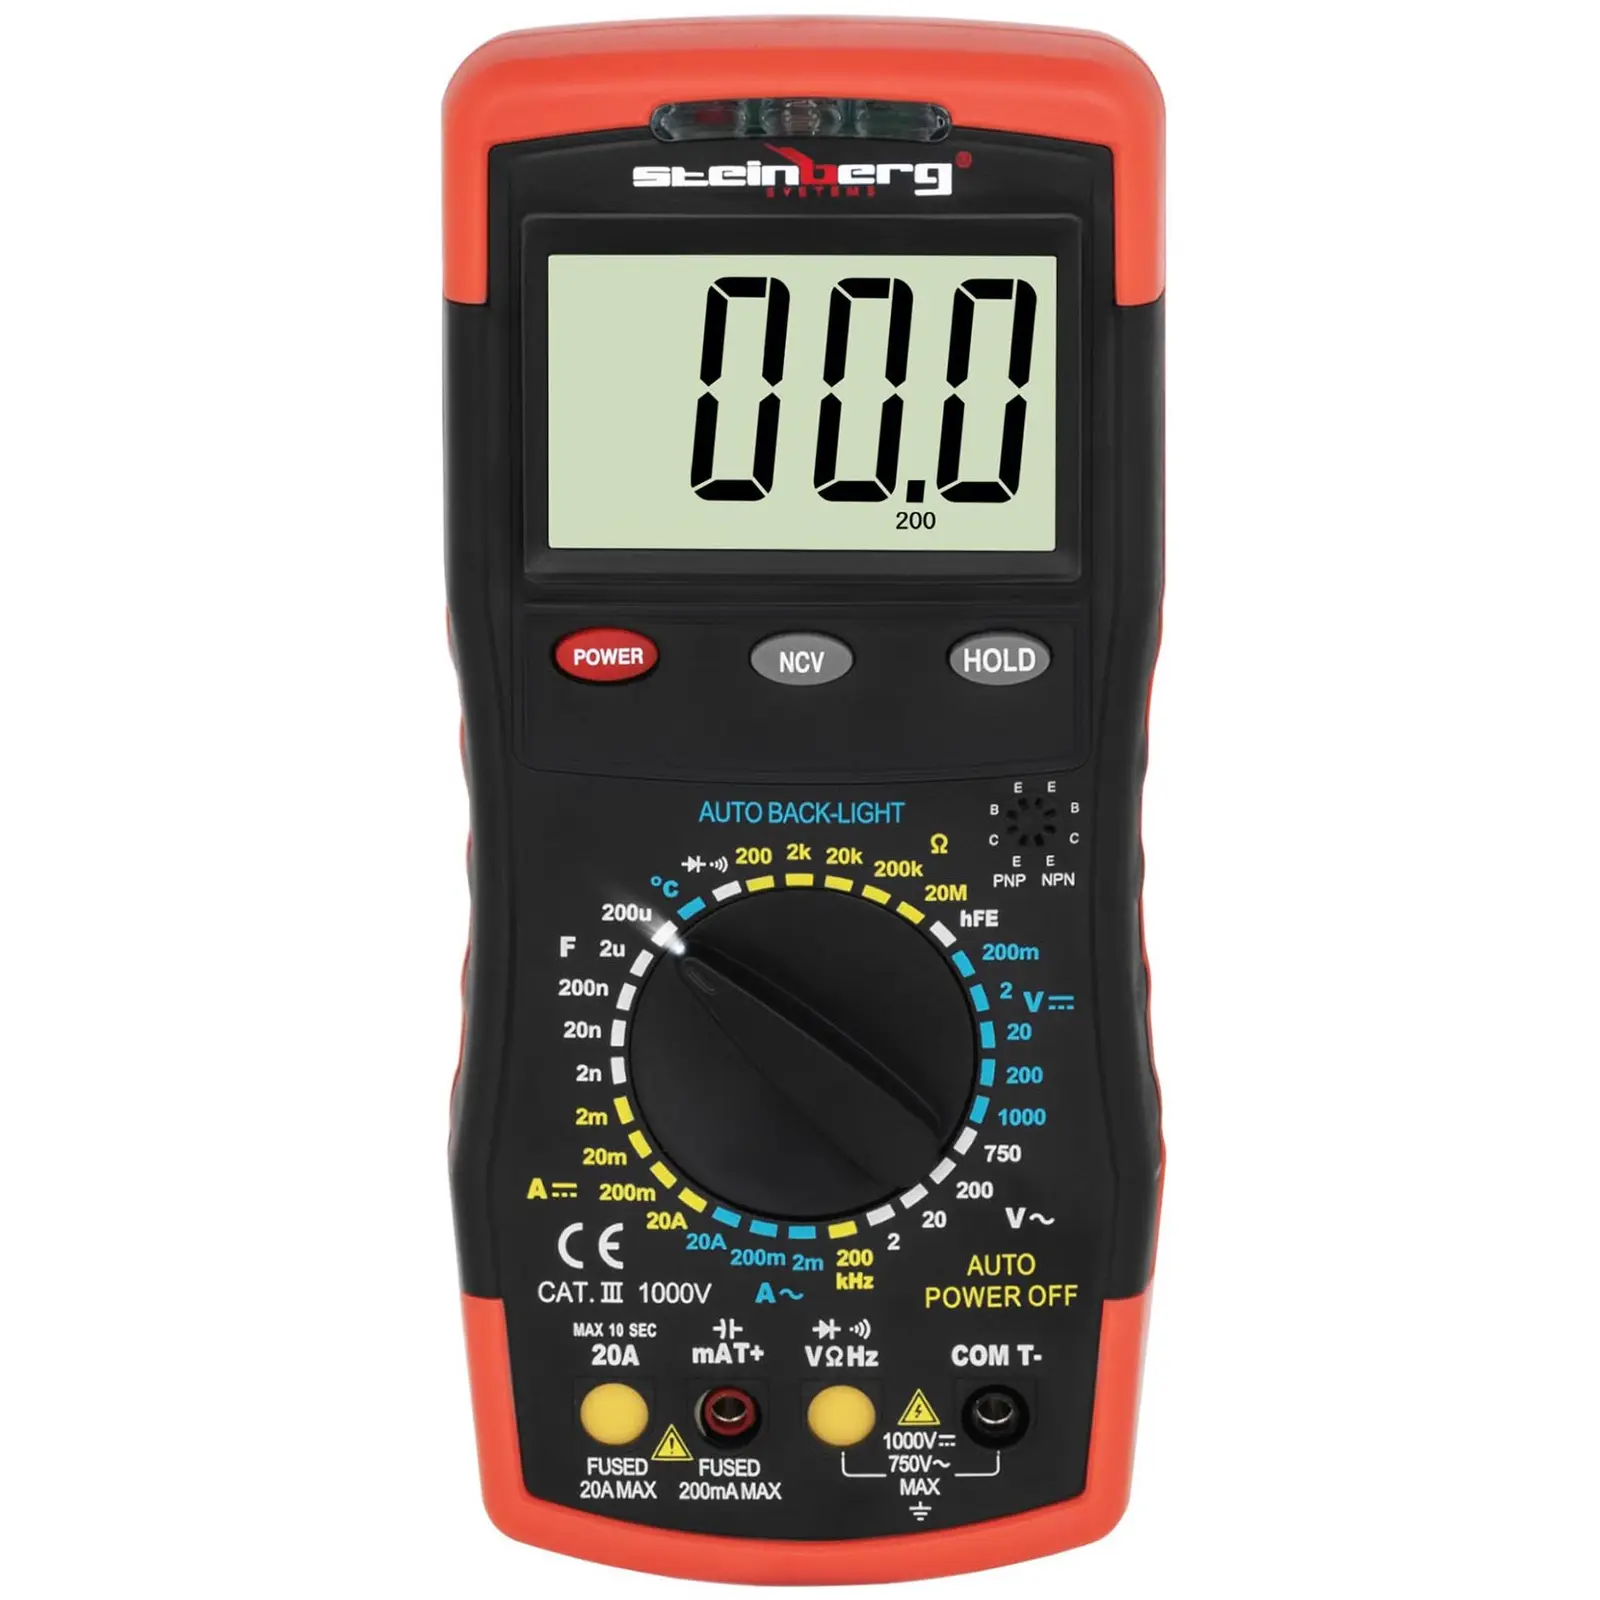 Multimètre - Capacité d’affichage de 2 000 valeurs - Test de transistor hFE - Détection sans contact de la tension (NCV) - Mesure de température